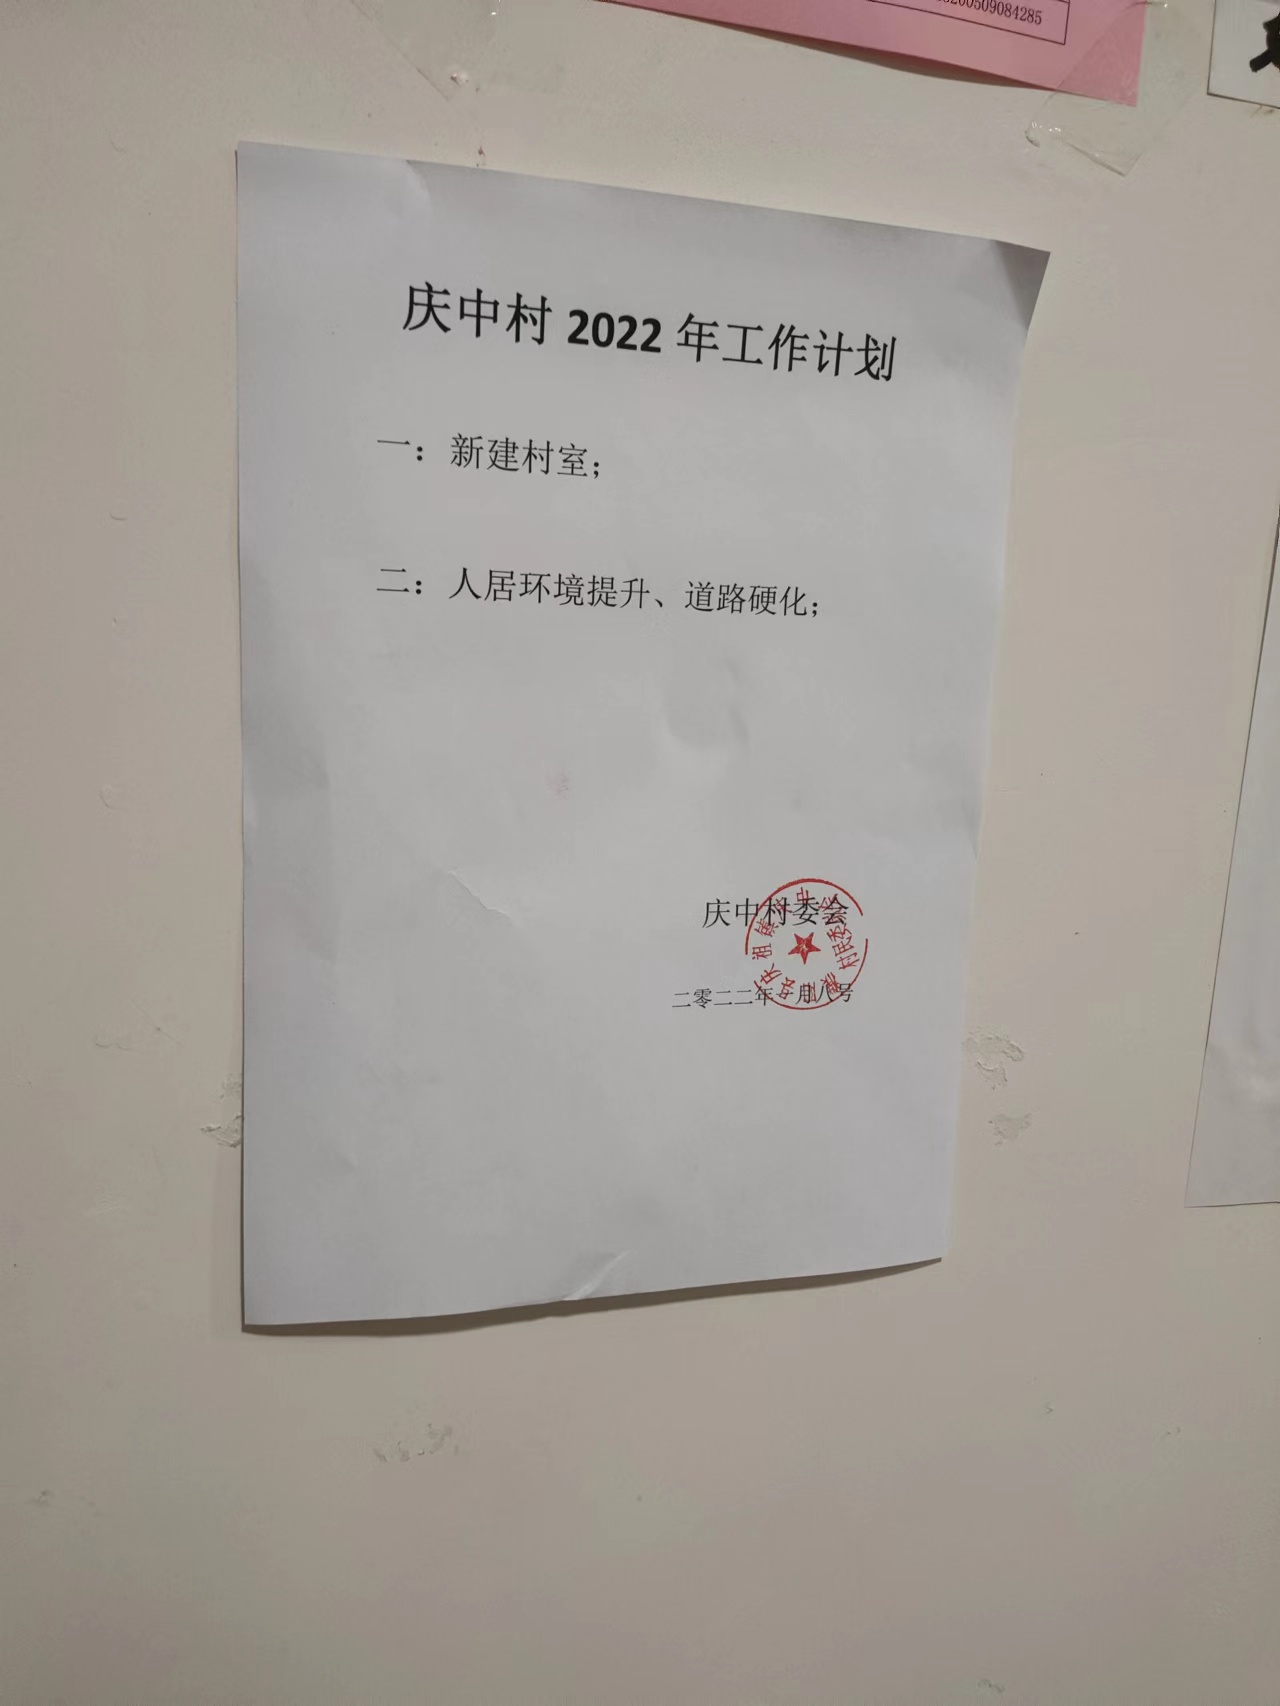 庆中村2022年工作计划.jpg